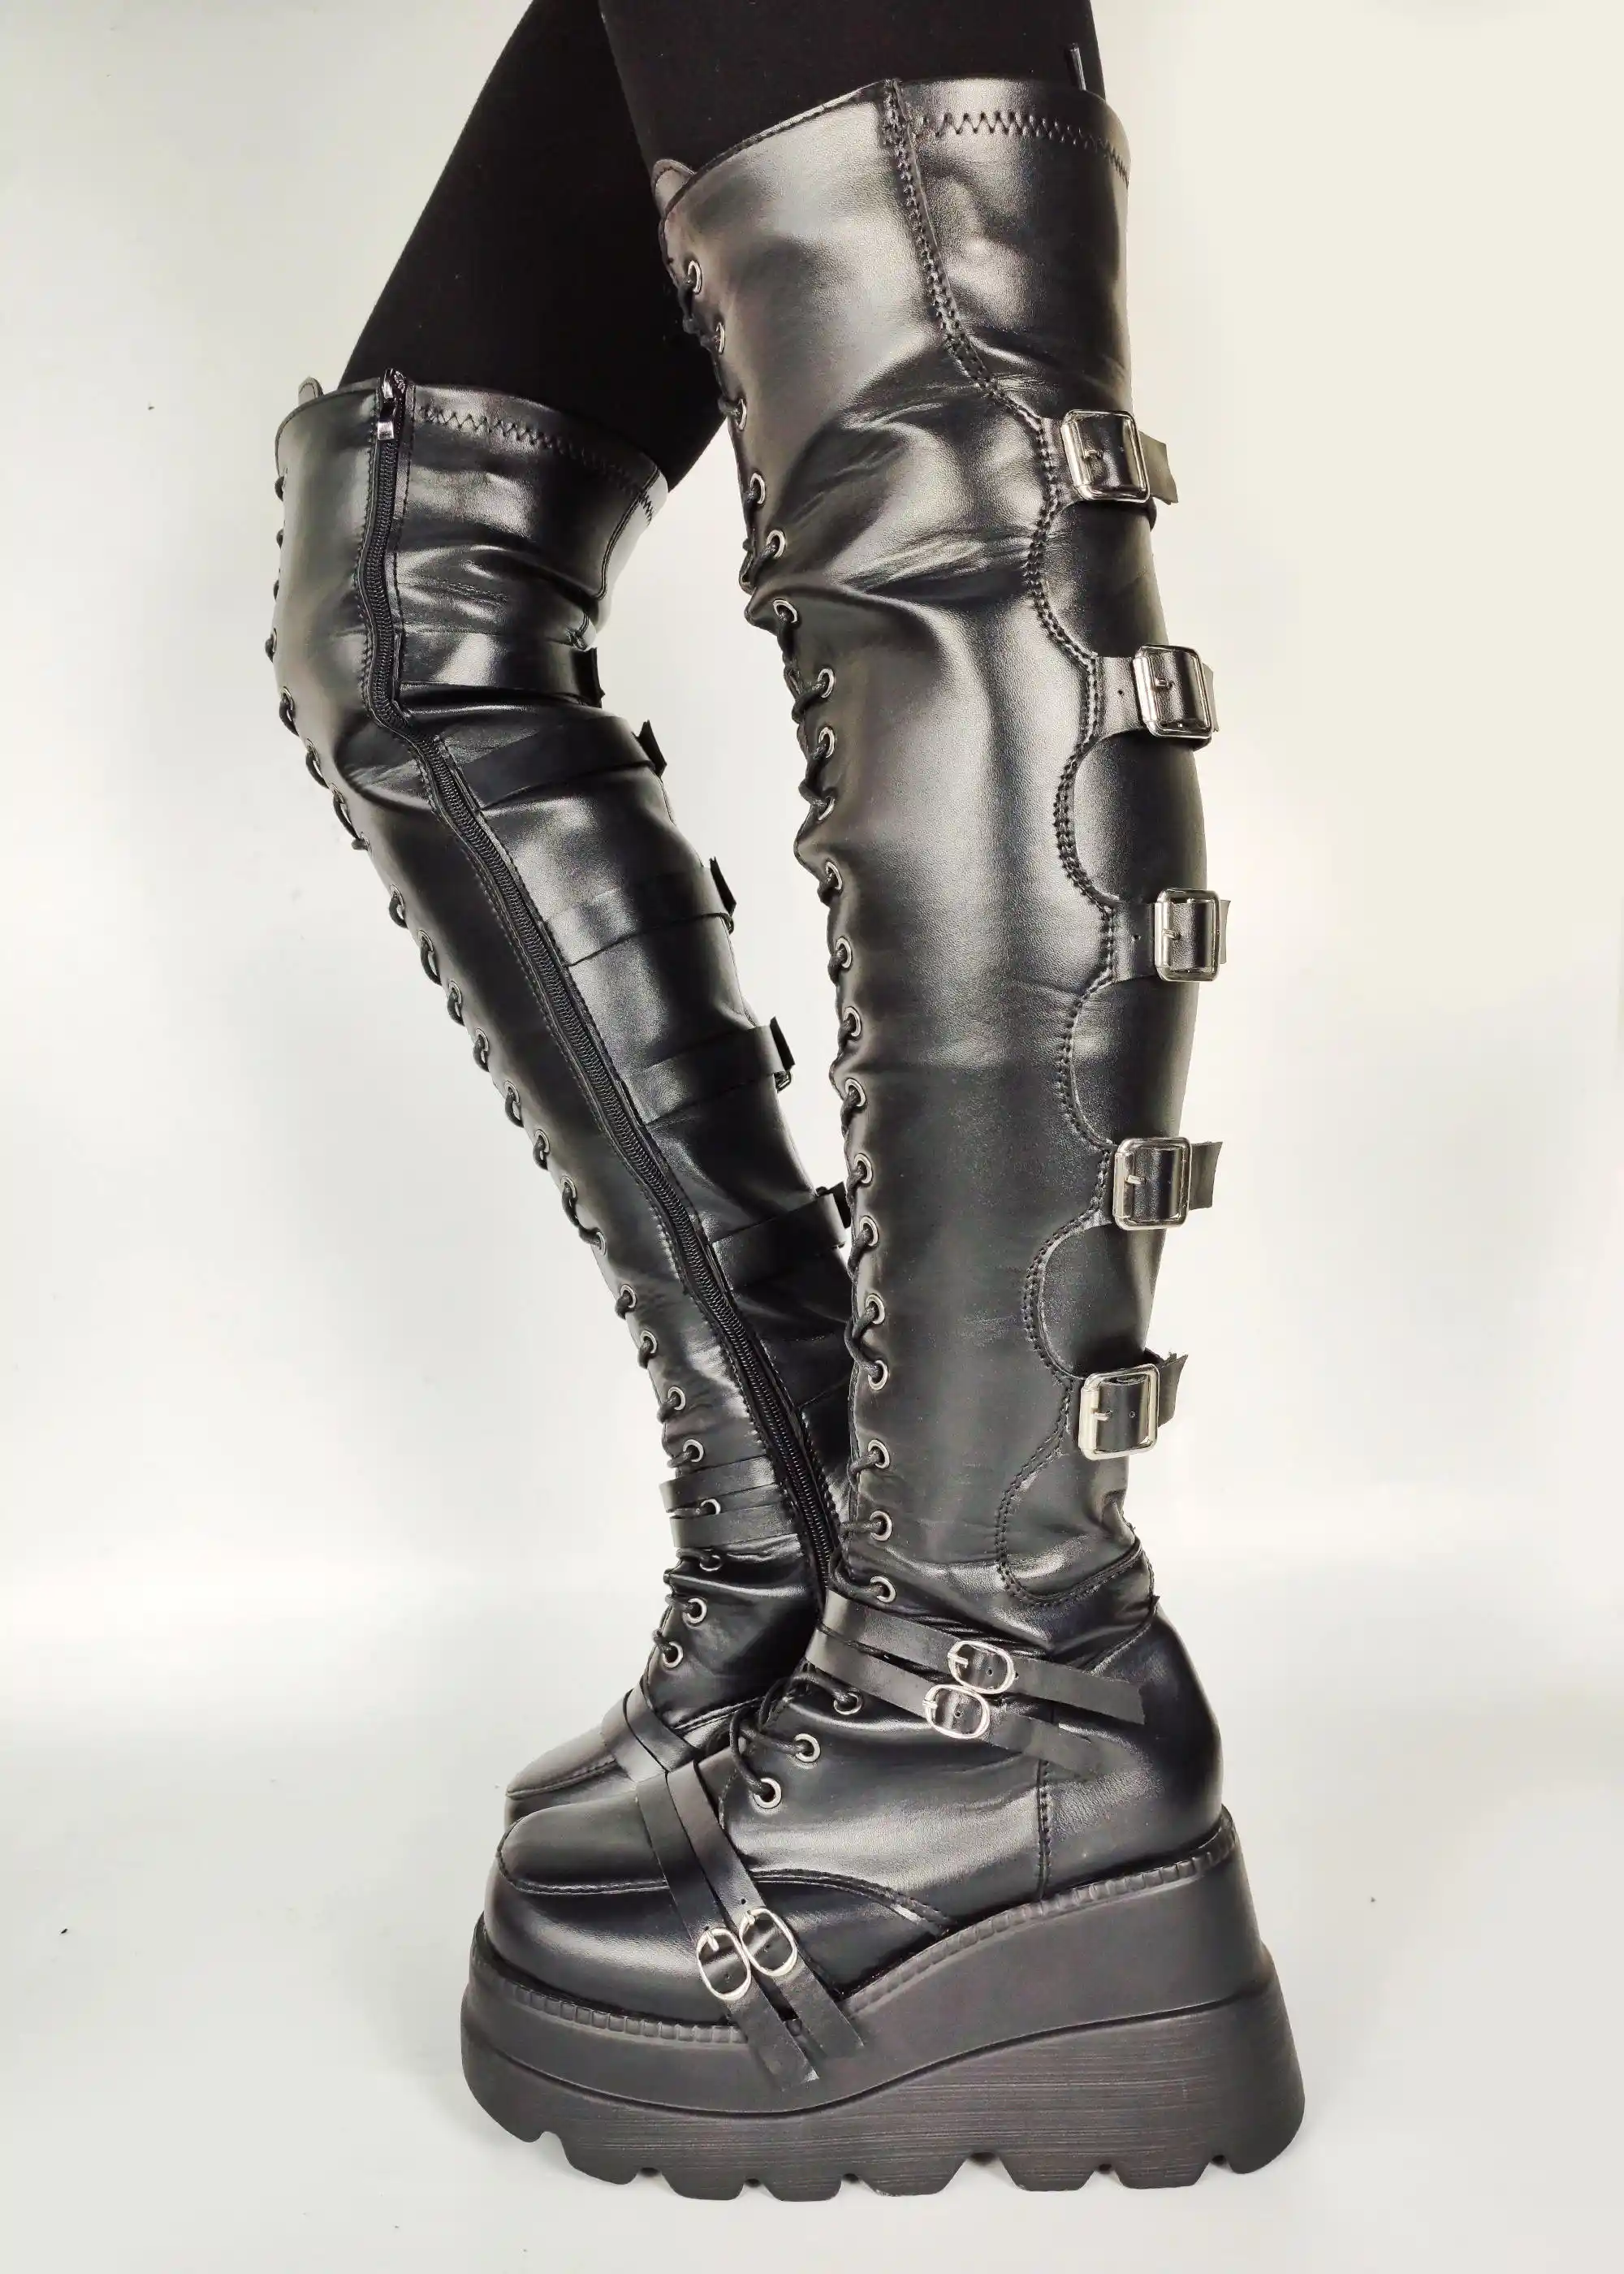 Femme Punk Cheville Bottes Haute Plate-forme Lacets Creepers Gothique Chaussures Escarpins Neuf